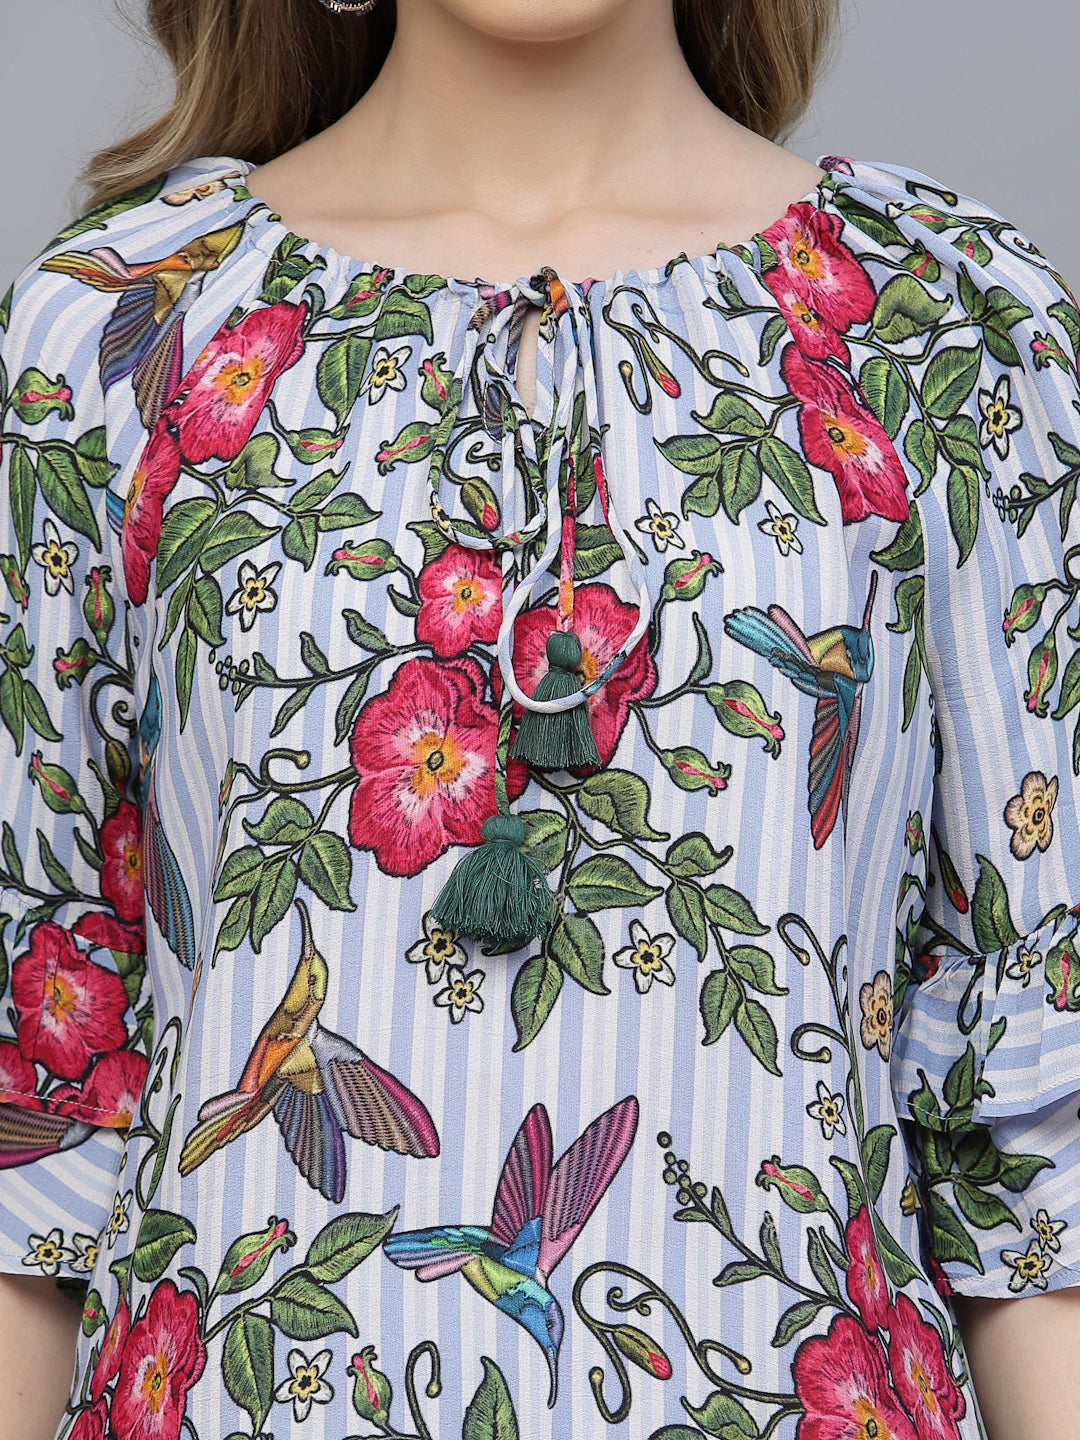 Valbone Women's Georgette Red & Green Floral Print Tie Pattern Top Half-Sleeves